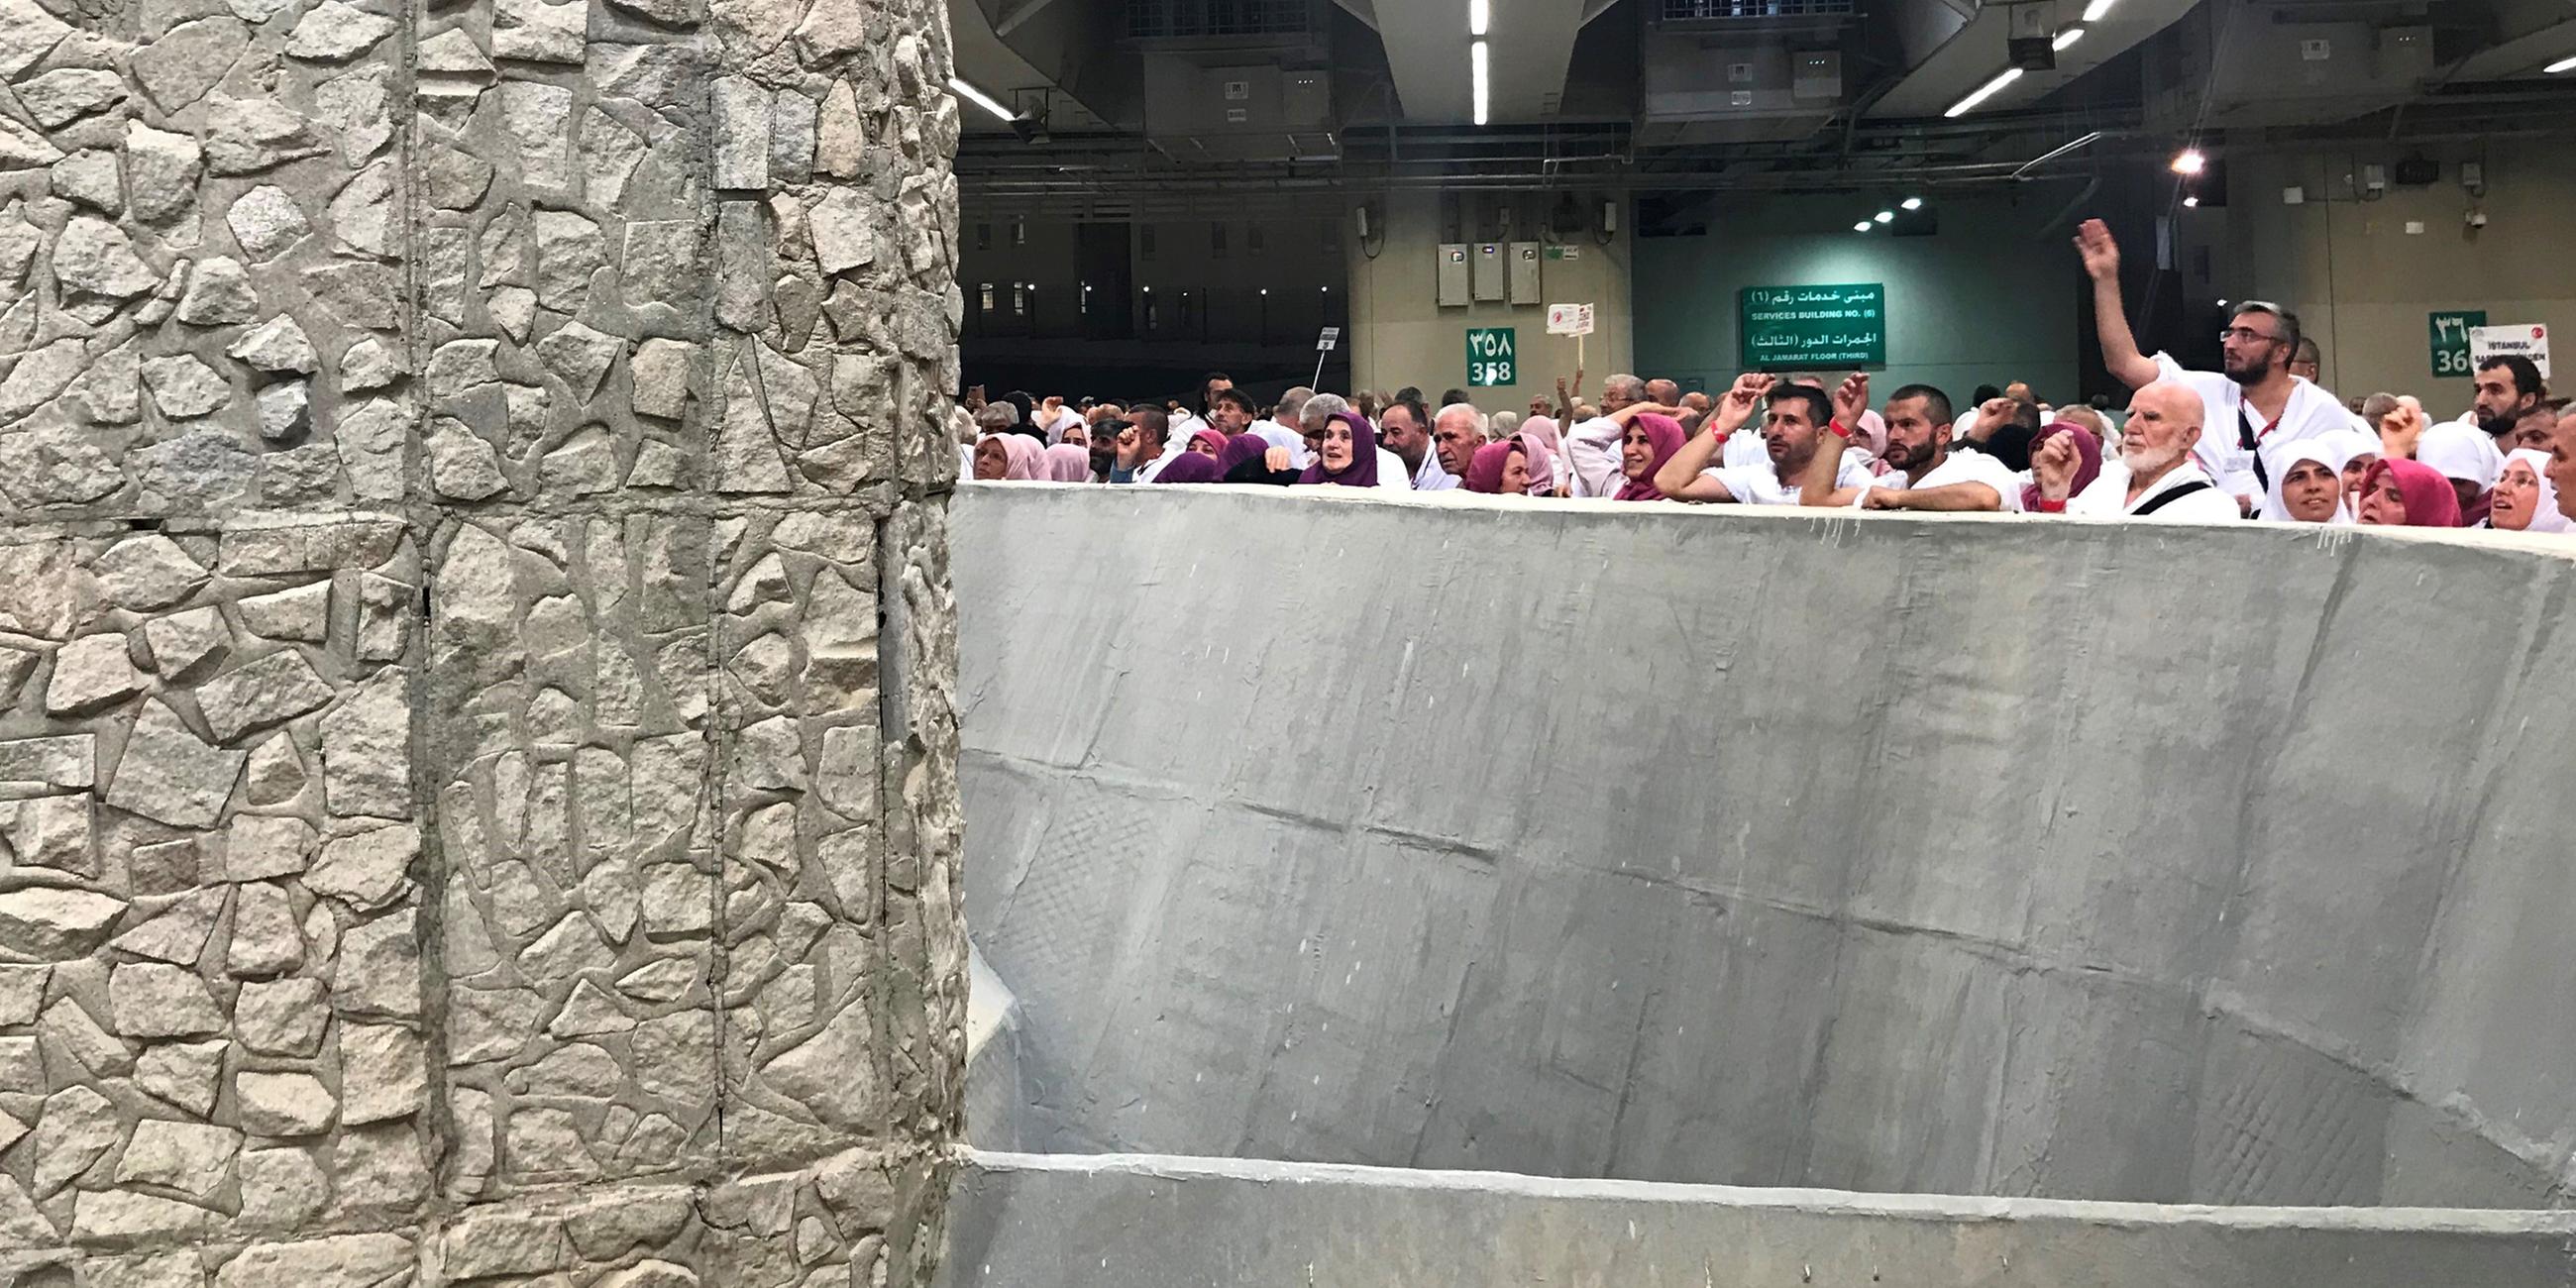 Pilger am 21.08.2018 in Mekka bei der "Steinigung des Teufels"